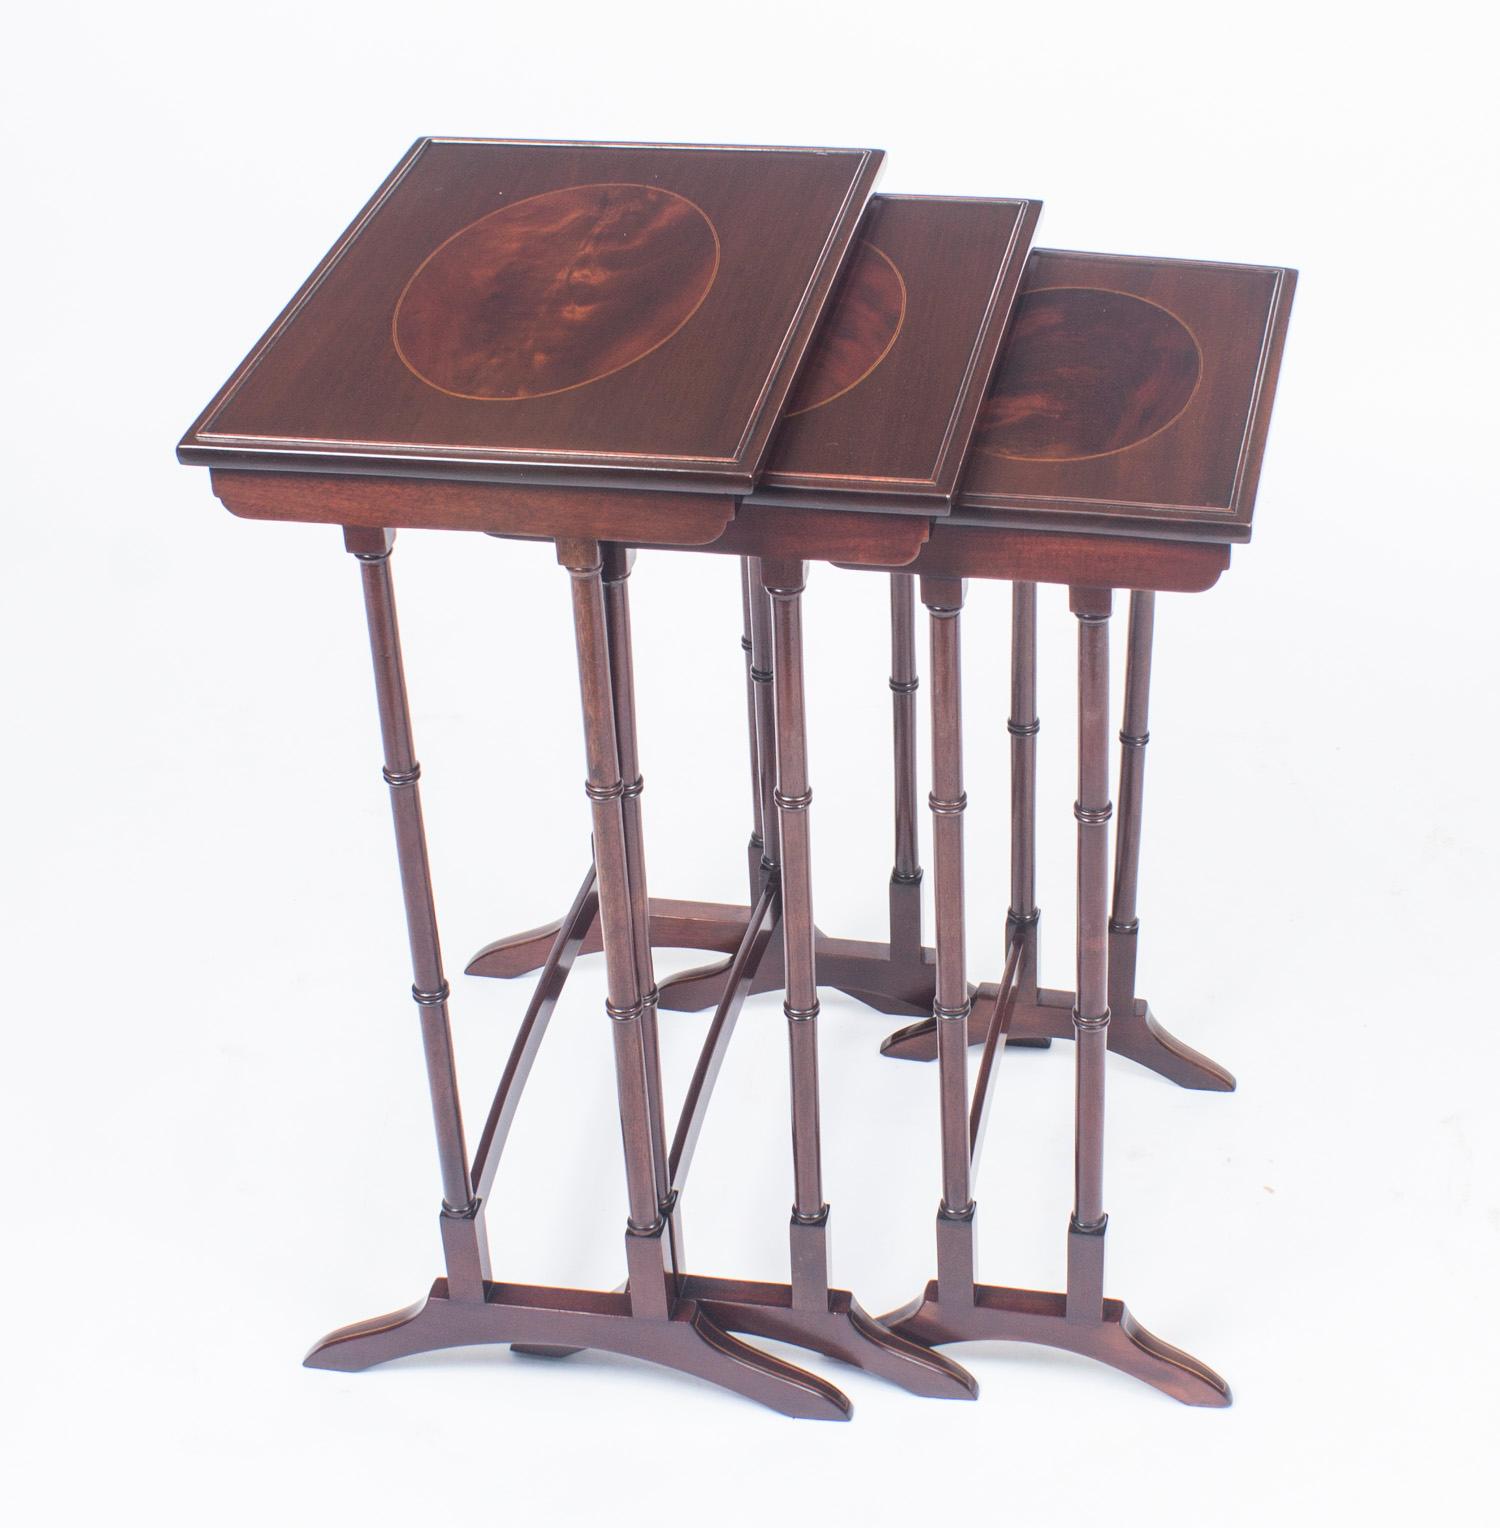 Il s'agit d'un magnifique ensemble de tables anciennes en acajou et marqueterie de la période édouardienne, datant d'environ 1880. 

Le nid se compose d'un ensemble de trois tables assorties qui s'emboîtent l'une dans l'autre. Chacune d'entre elles